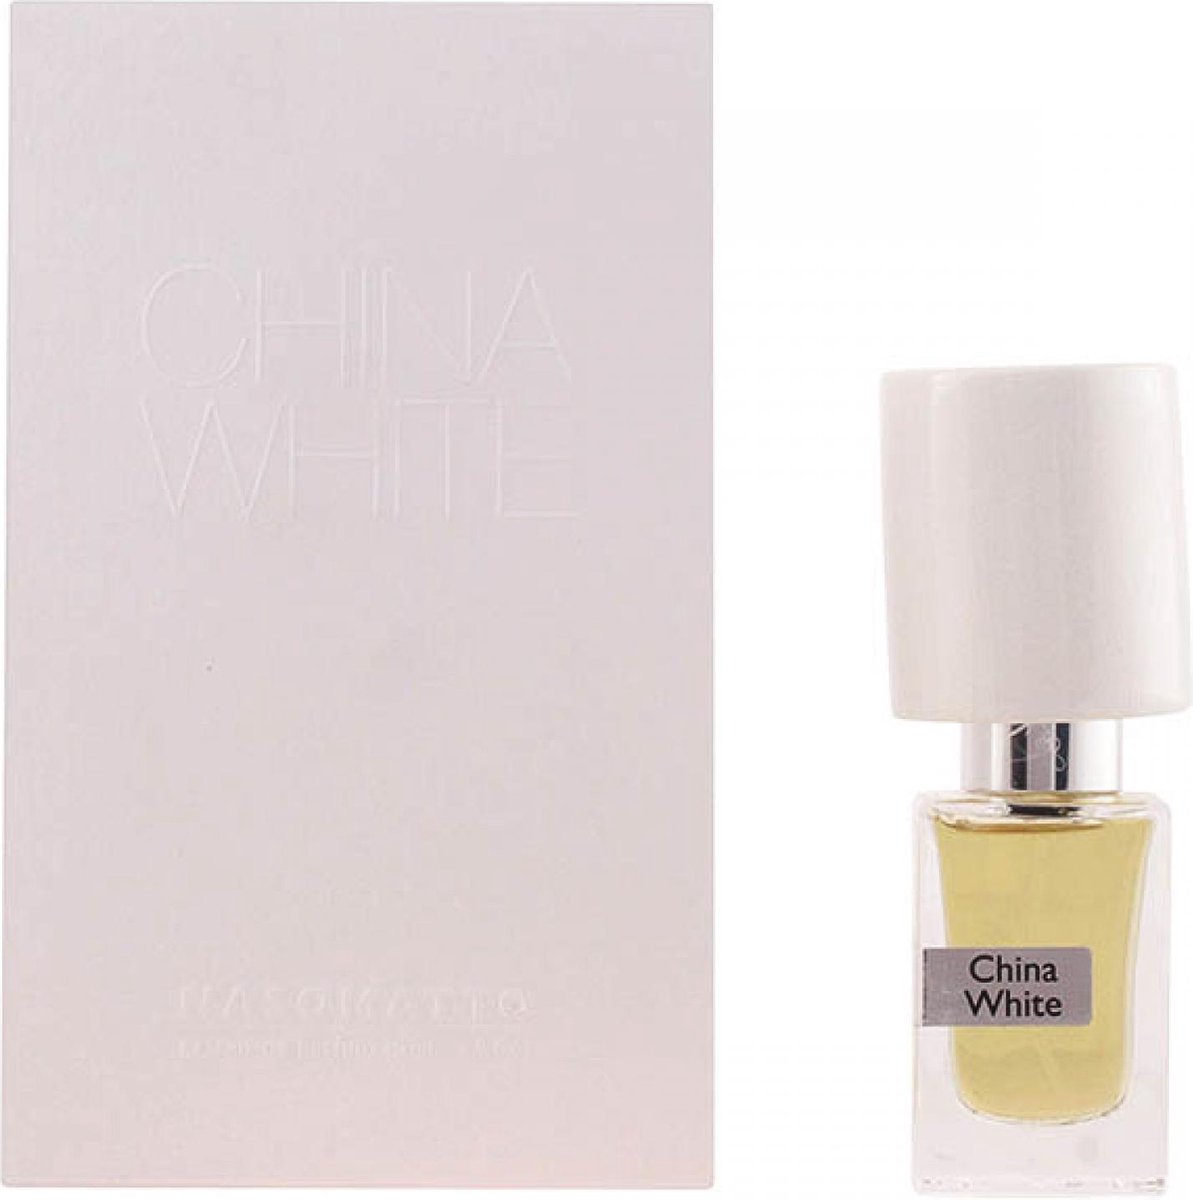 Nasomatto China White - 30 ml - extrait de parfum spray - eau de parfum spray - damesparfum